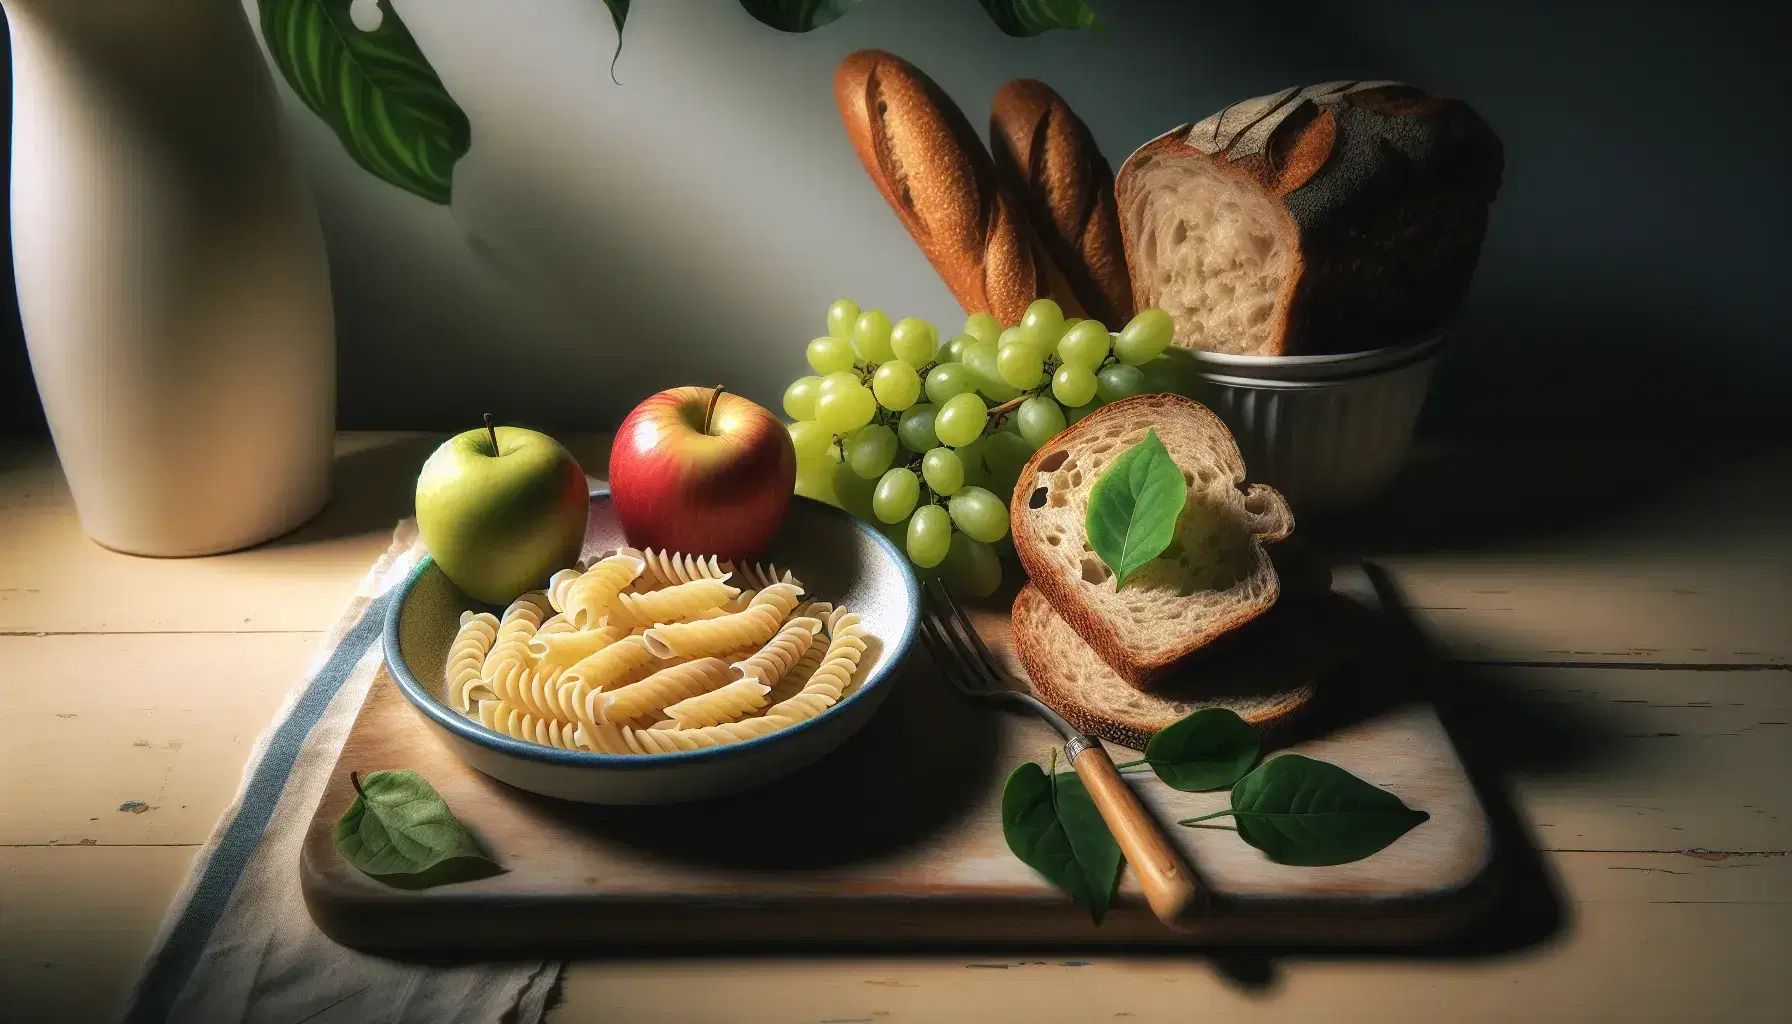 Variedad de alimentos ricos en carbohidratos con pasta en espiral en plato blanco, rebanada de pan integral, manzana roja y racimo de uvas verdes sobre superficie de madera clara.